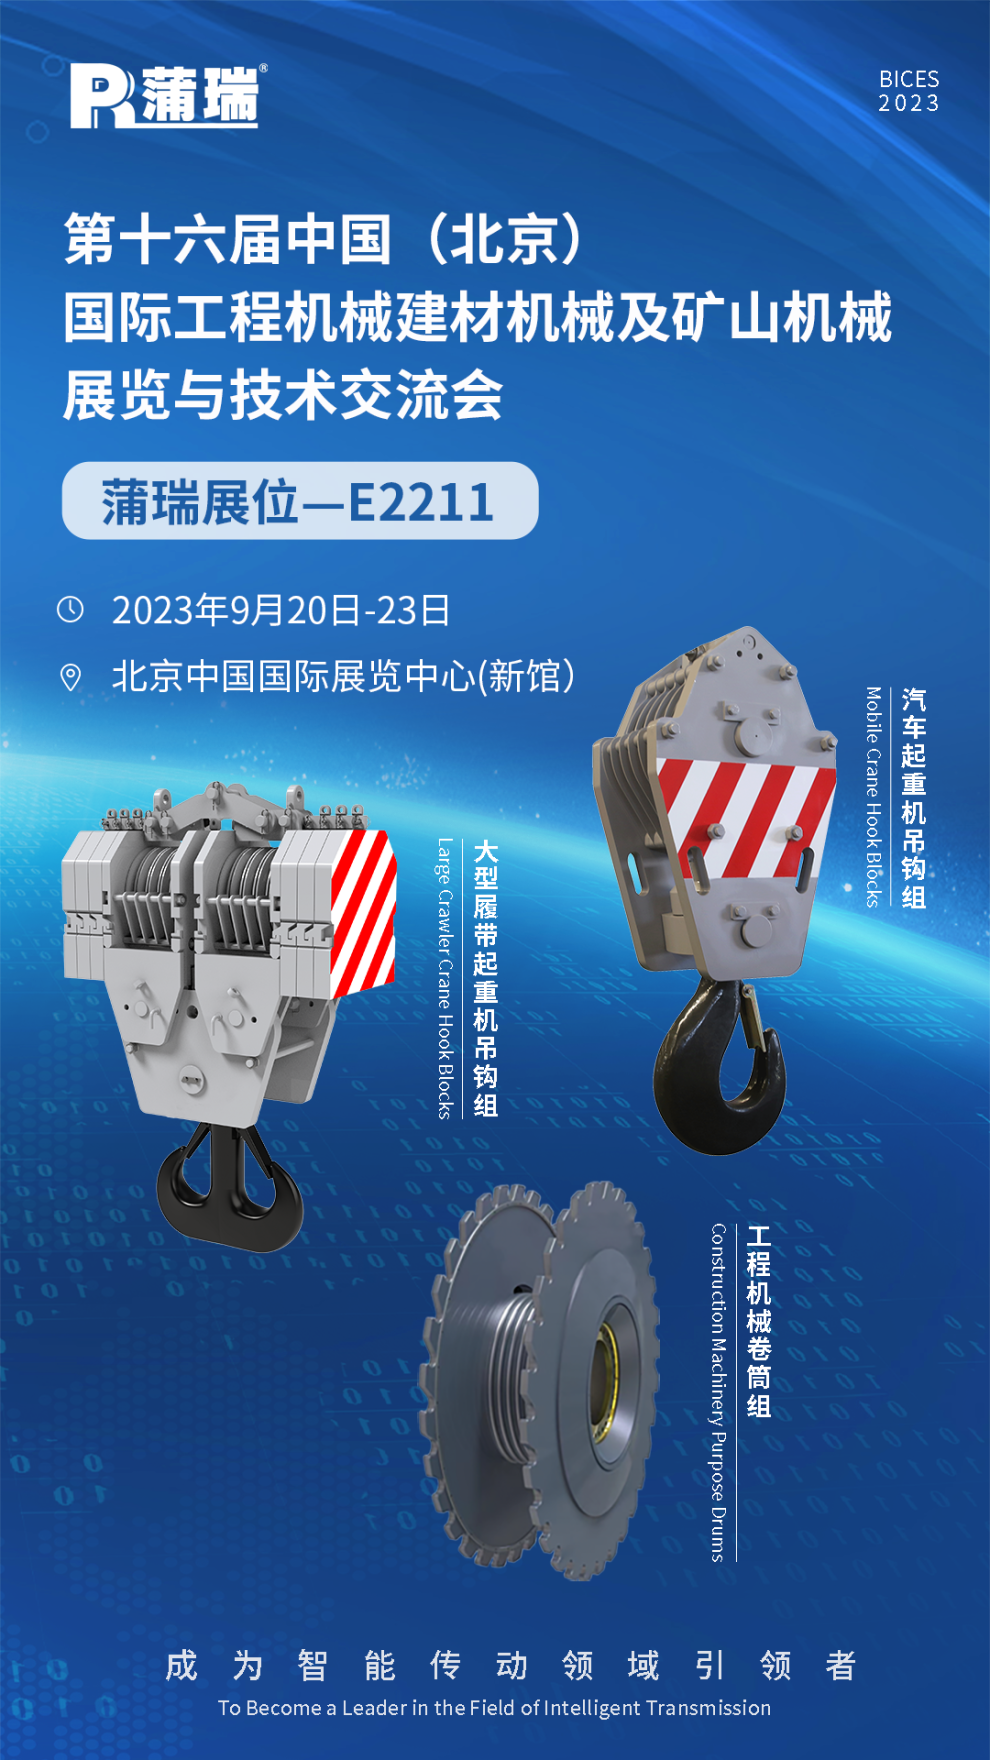 蒲瑞邀您相聚BICES 2023北京工程机械展会